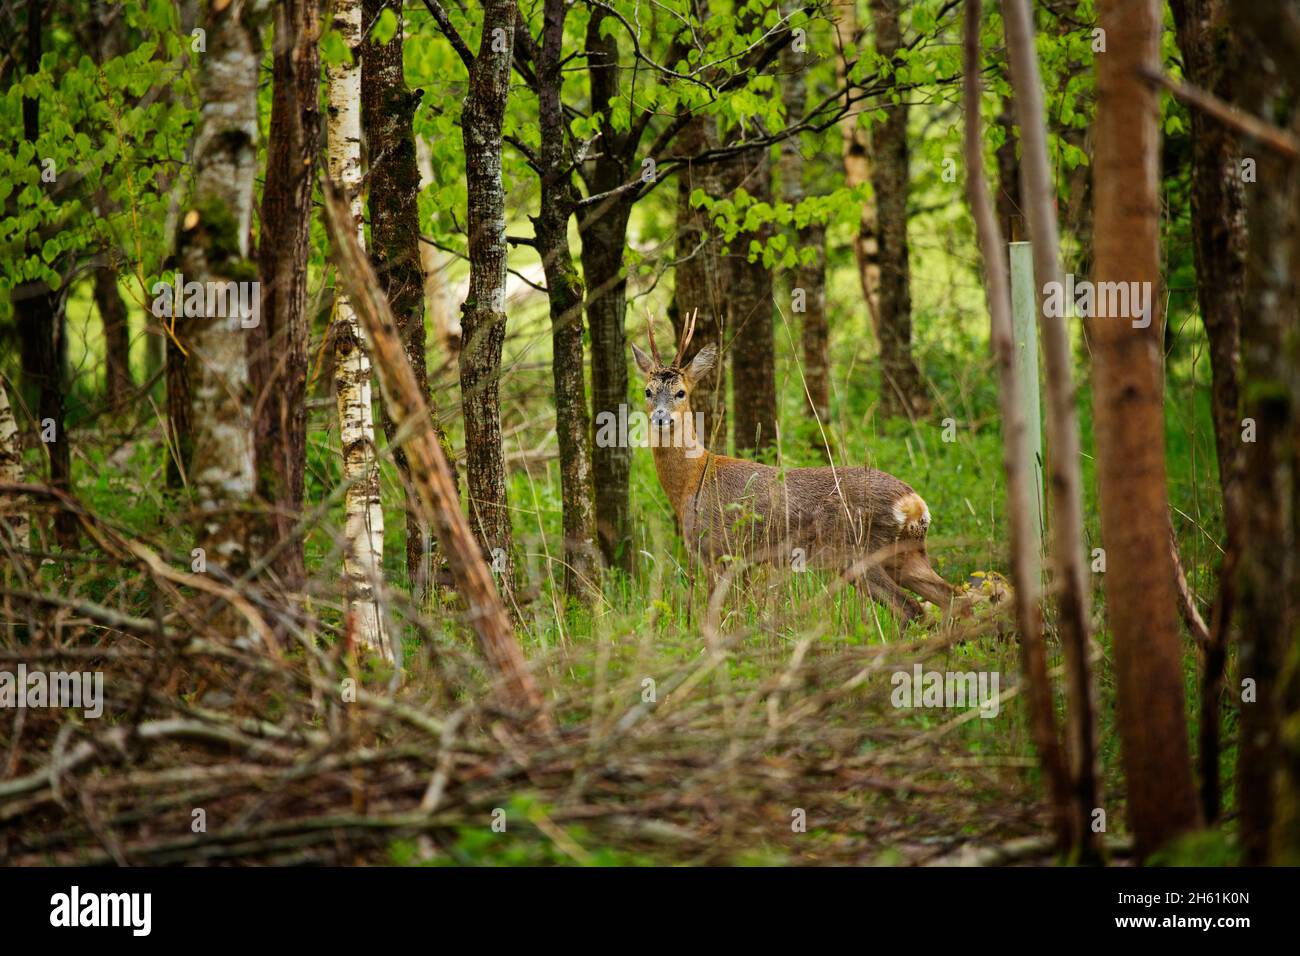 A Roe deer buck in a woodland olantation in Devon, UK Stock Photo